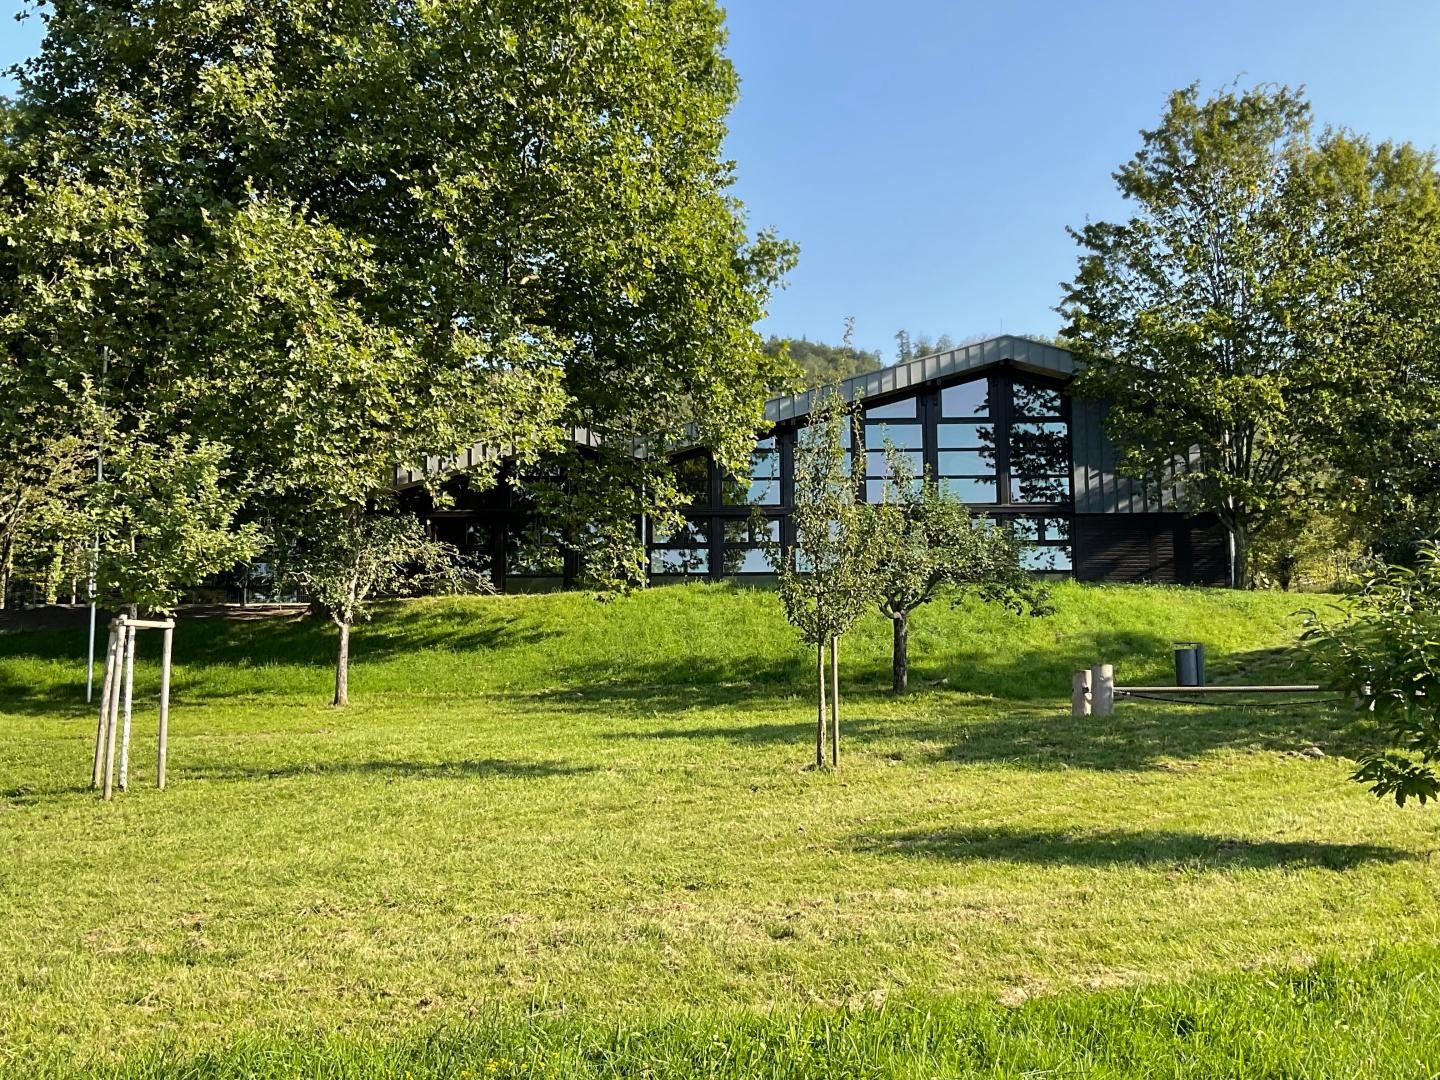 Außenansicht der Waldsaumhalle am Tag bei Sonnenschein im Sommer mit grüner Wiese im Vordergrund und grünen Bäumen, welche die Halle umrahmen